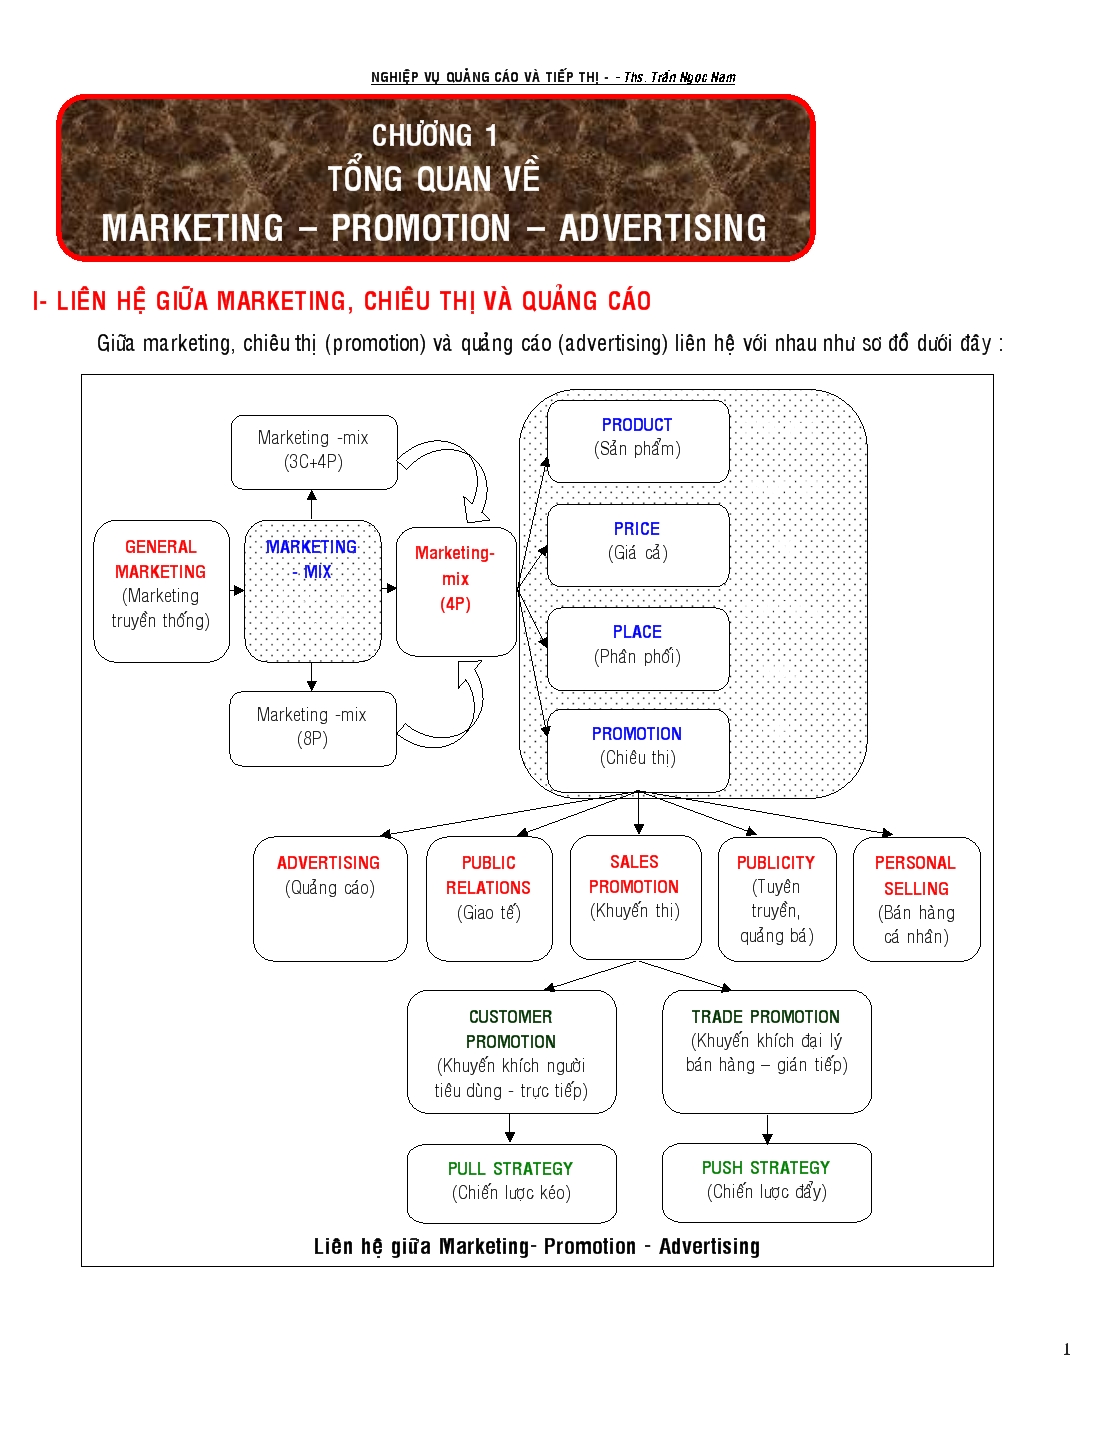 Liên hệ giữa marketing, chiêu thị và quảng cáo trang 1